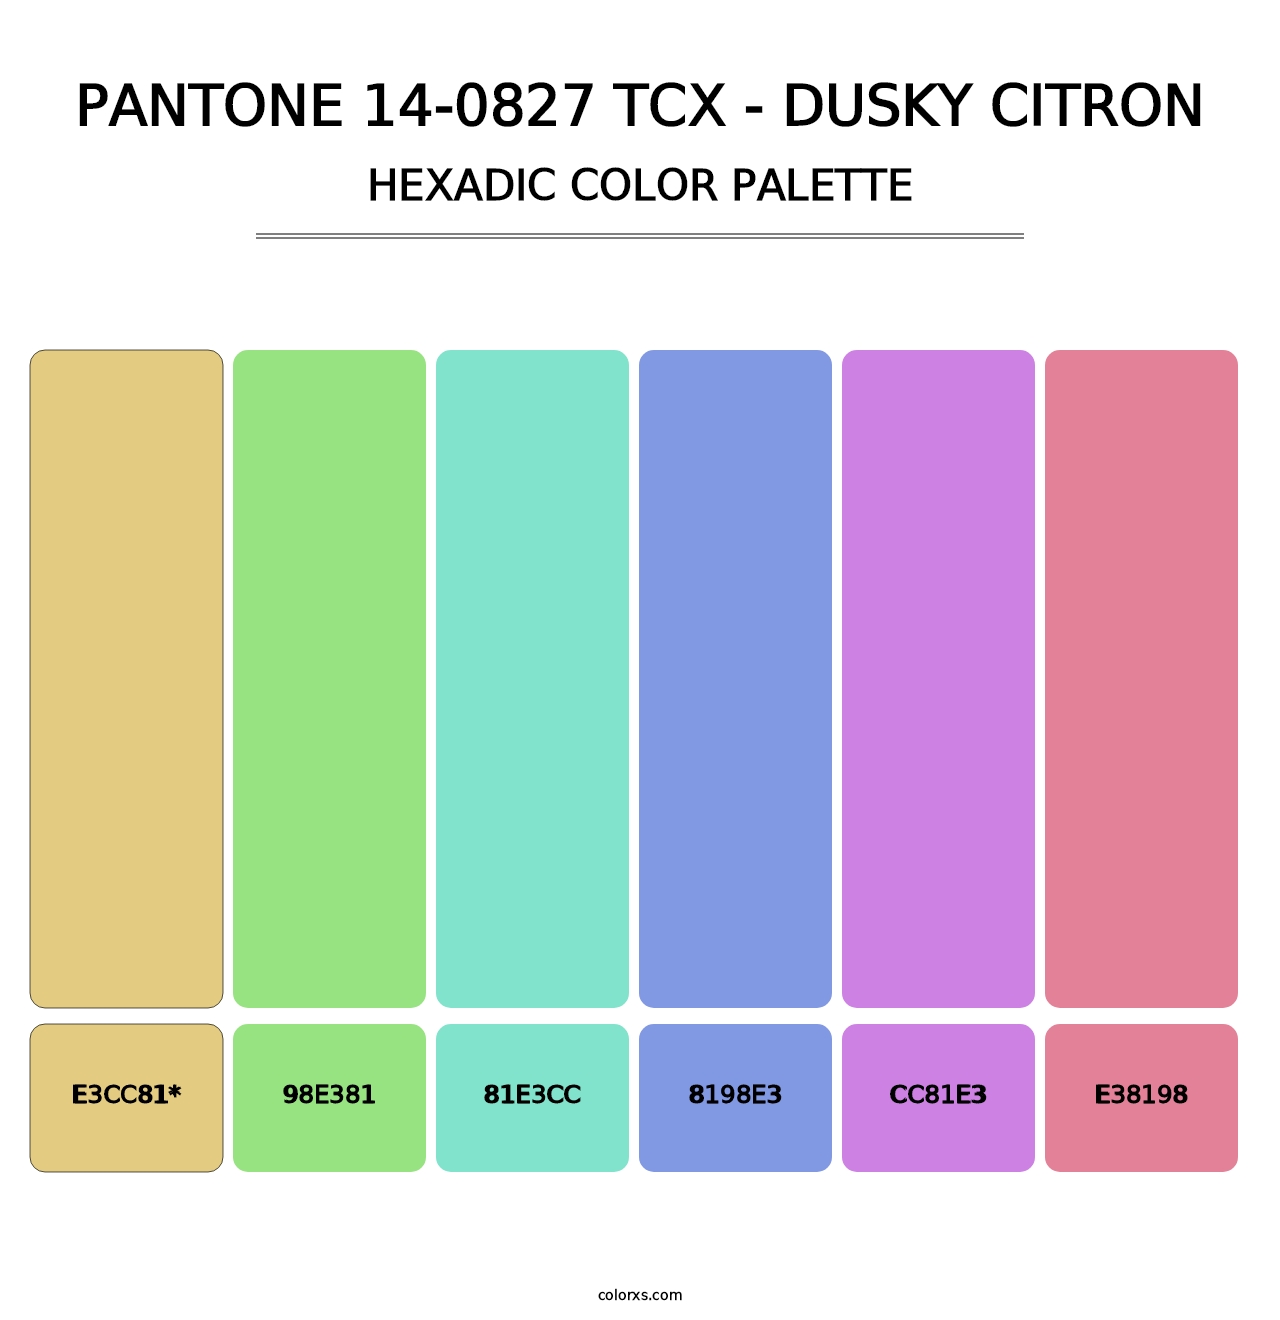 PANTONE 14-0827 TCX - Dusky Citron - Hexadic Color Palette